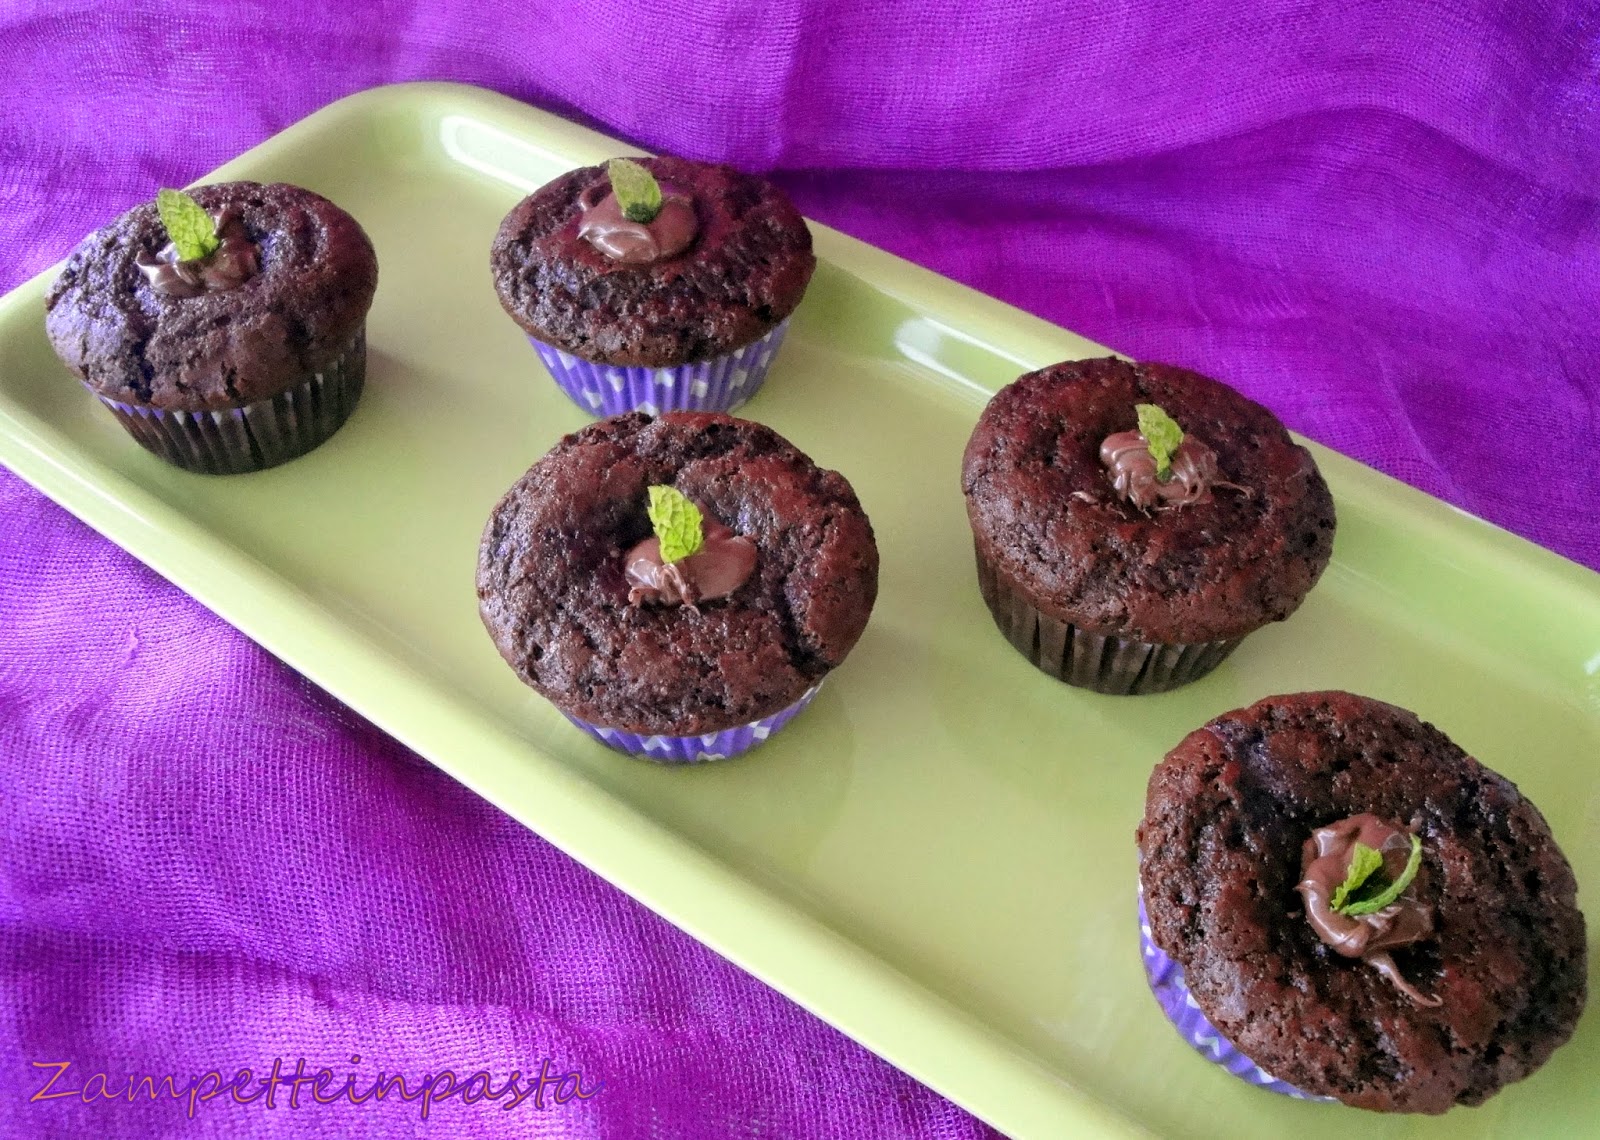 Muffin al cacao con fragole - Ricetta con le fragole